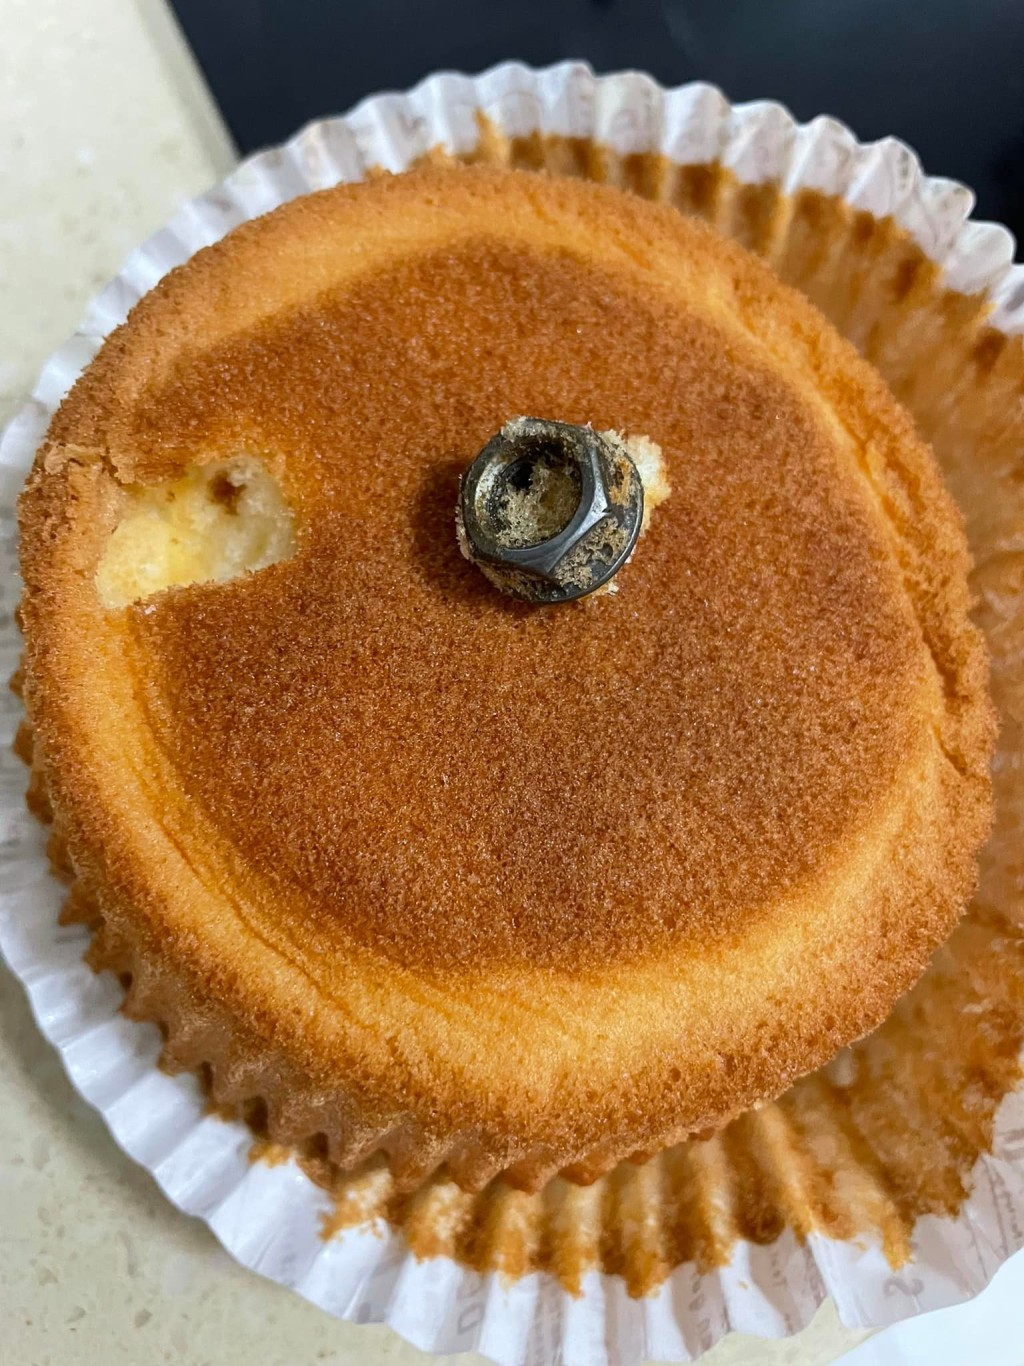 澳門有網民發現小蛋糕內藏螺絲帽。網民Kathie Tam圖片